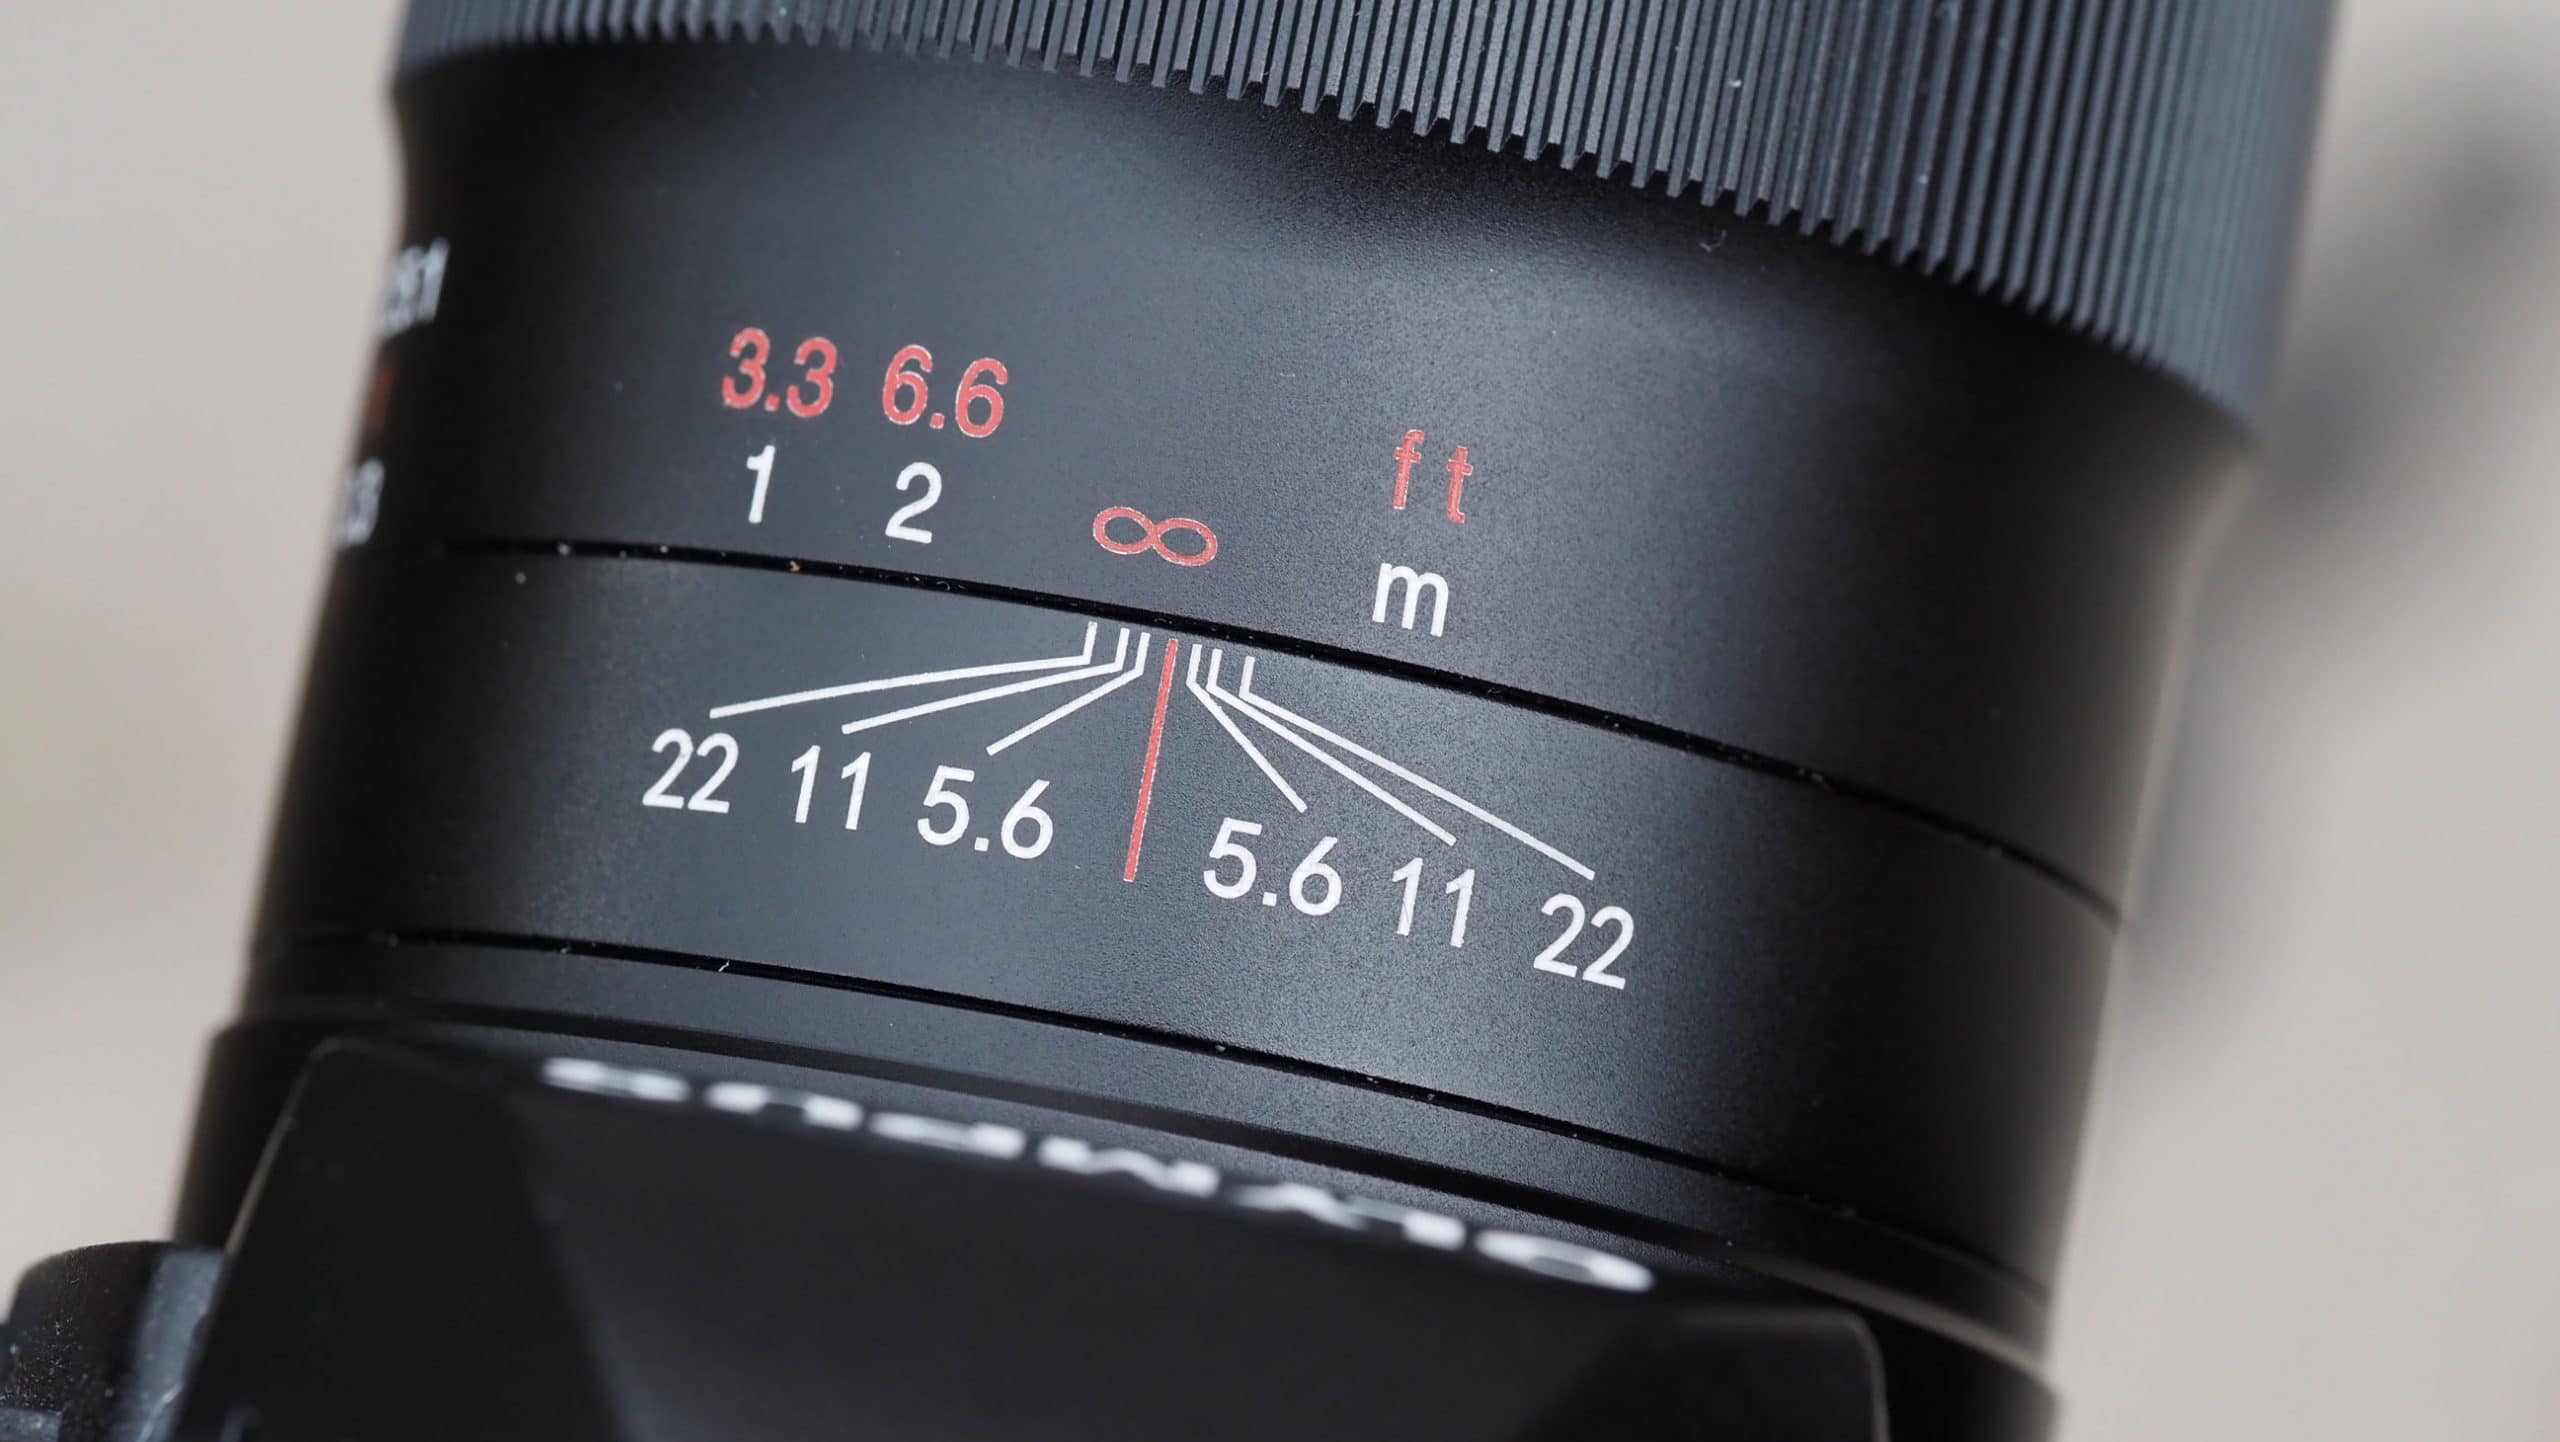 Đánh giá ống kính Laowa 50mm F2.8 Macro thông qua các bức ảnh chụp côn trùng từ nhiếp ảnh gia